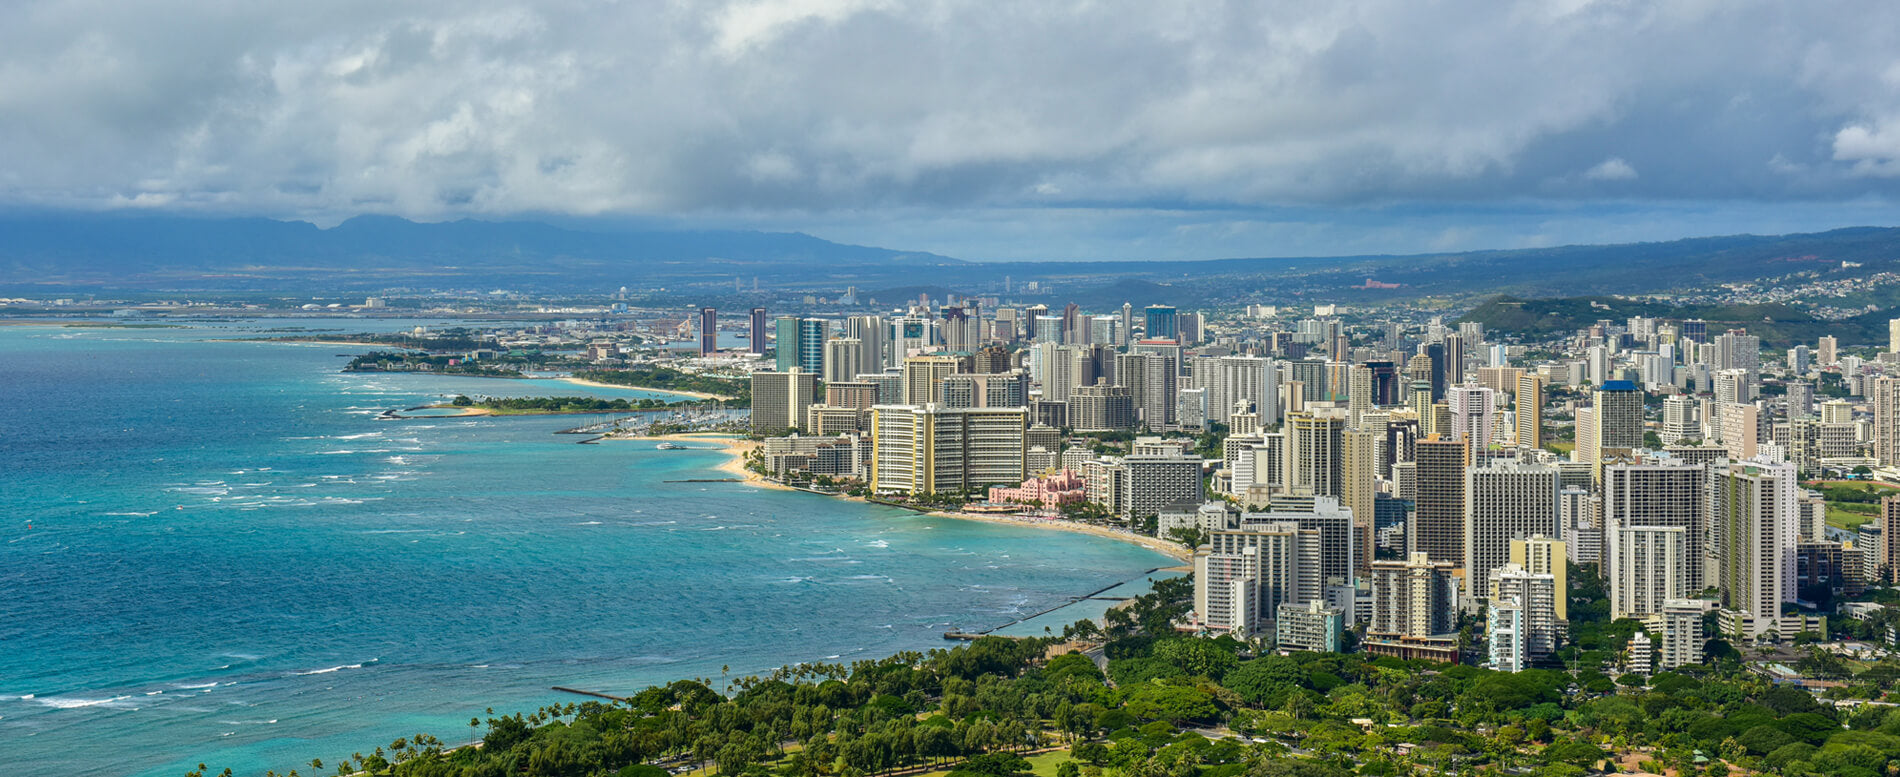 Aerial view of Oahu